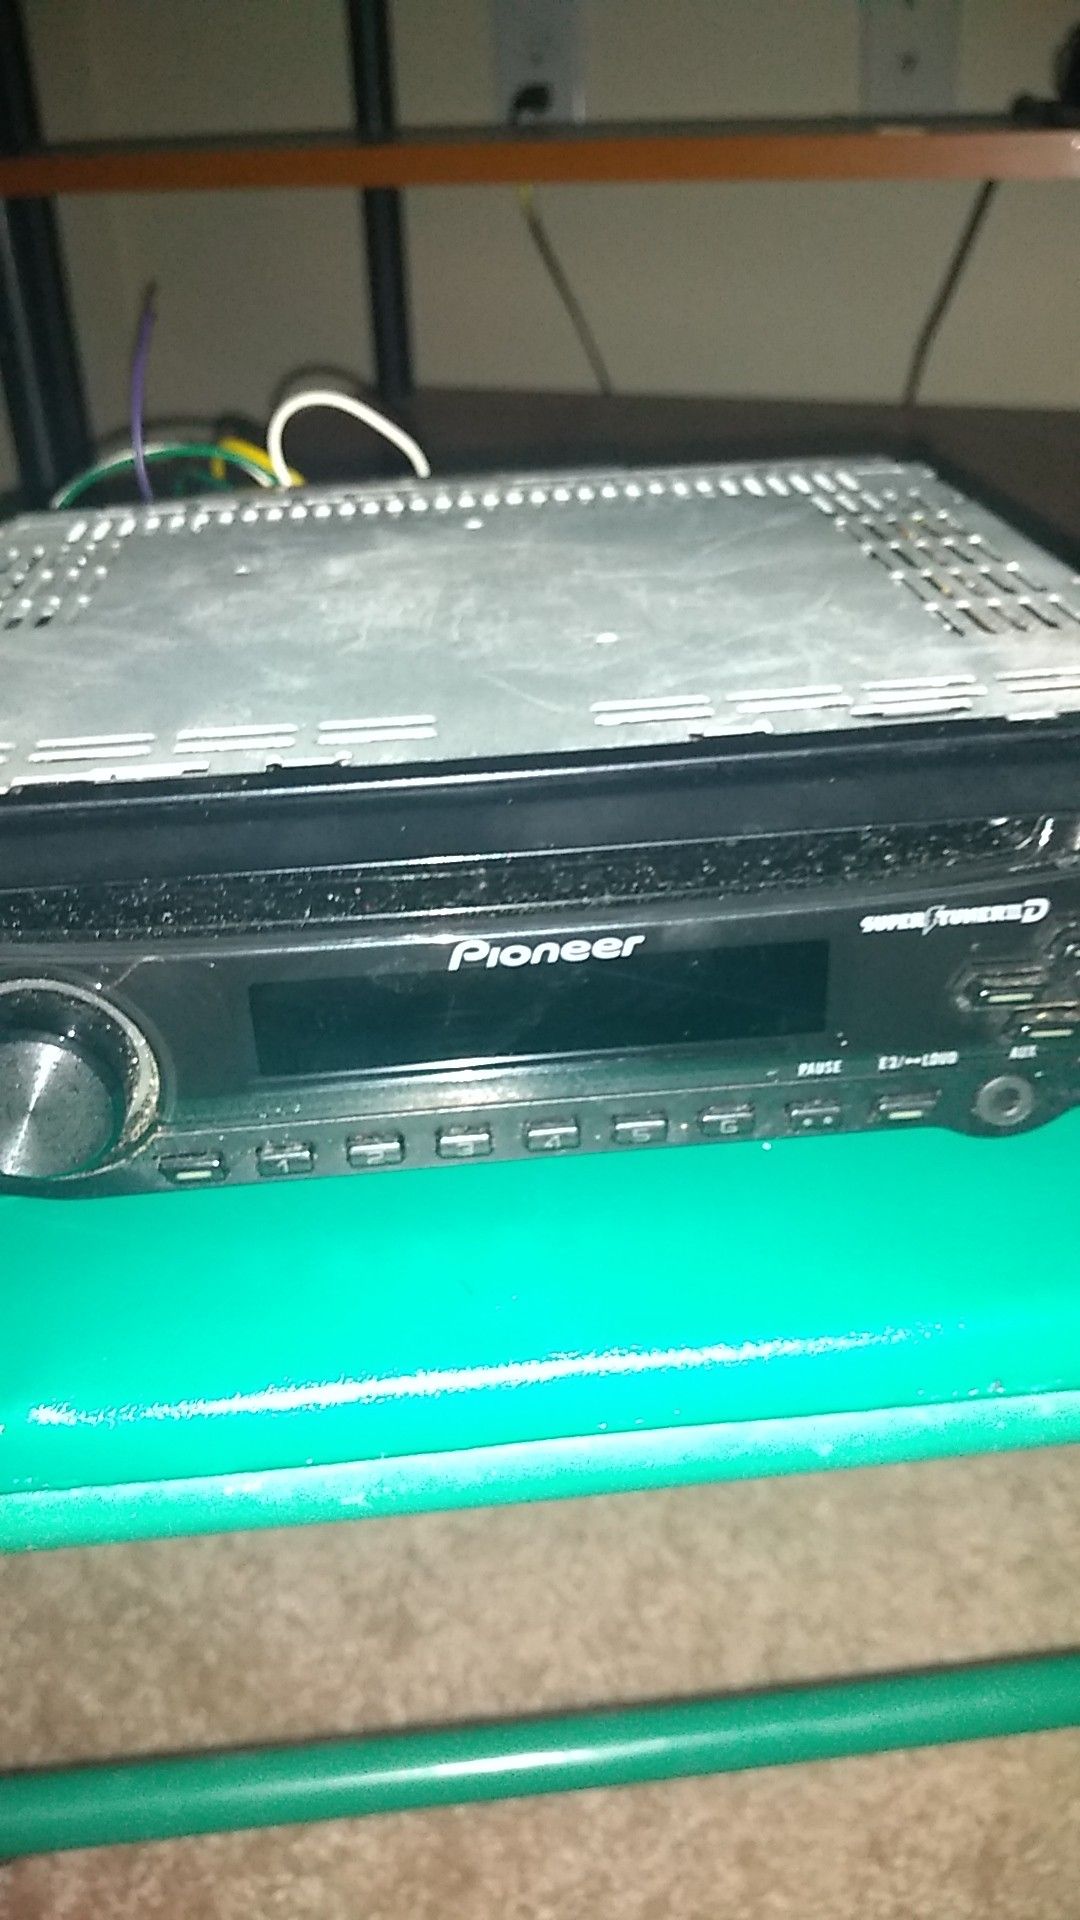 Pioneer radio